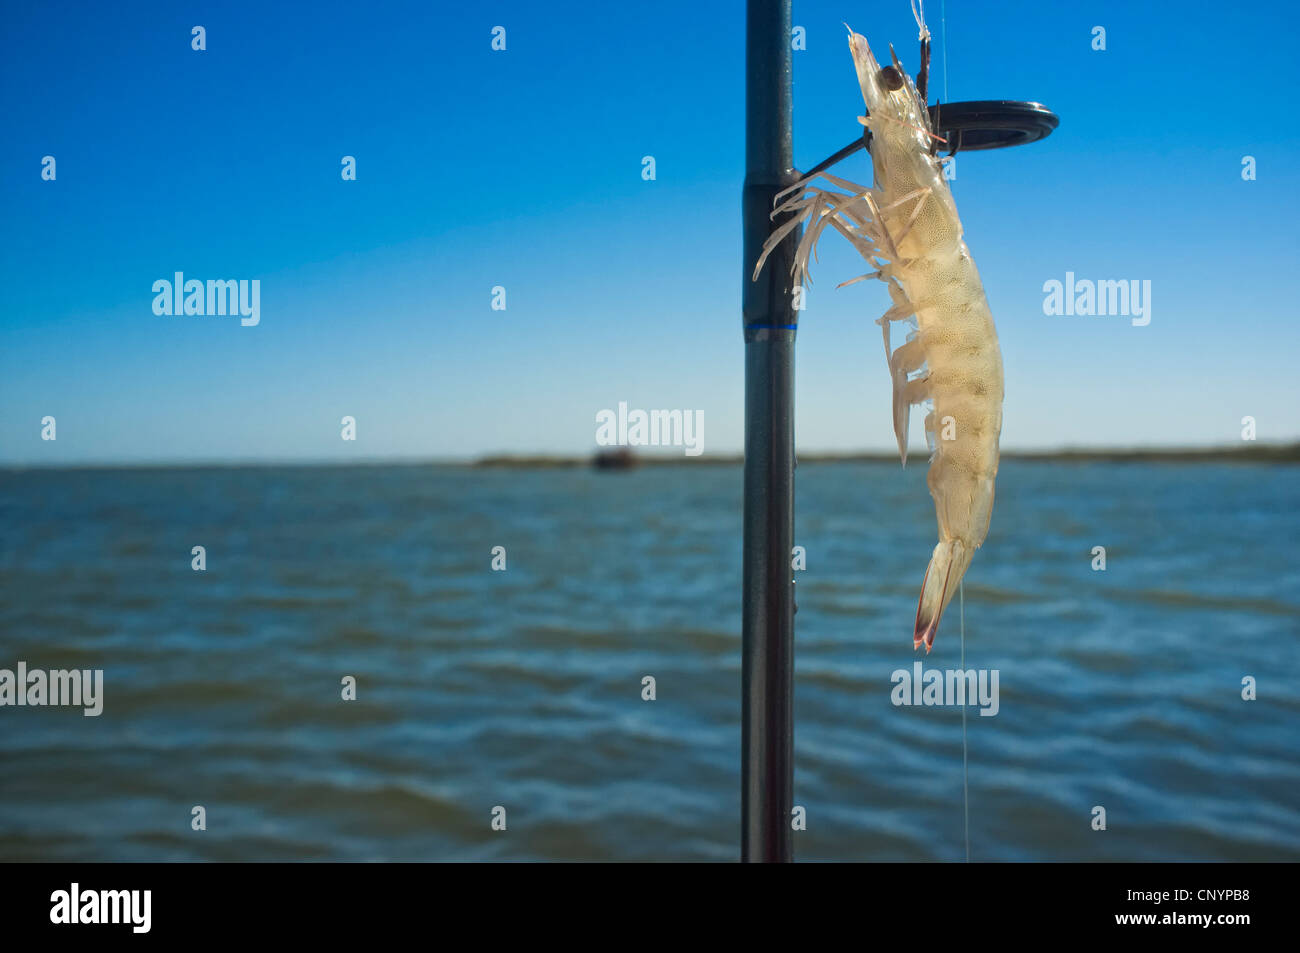 Shrimp bait on fishing hook Stock Photo - Alamy